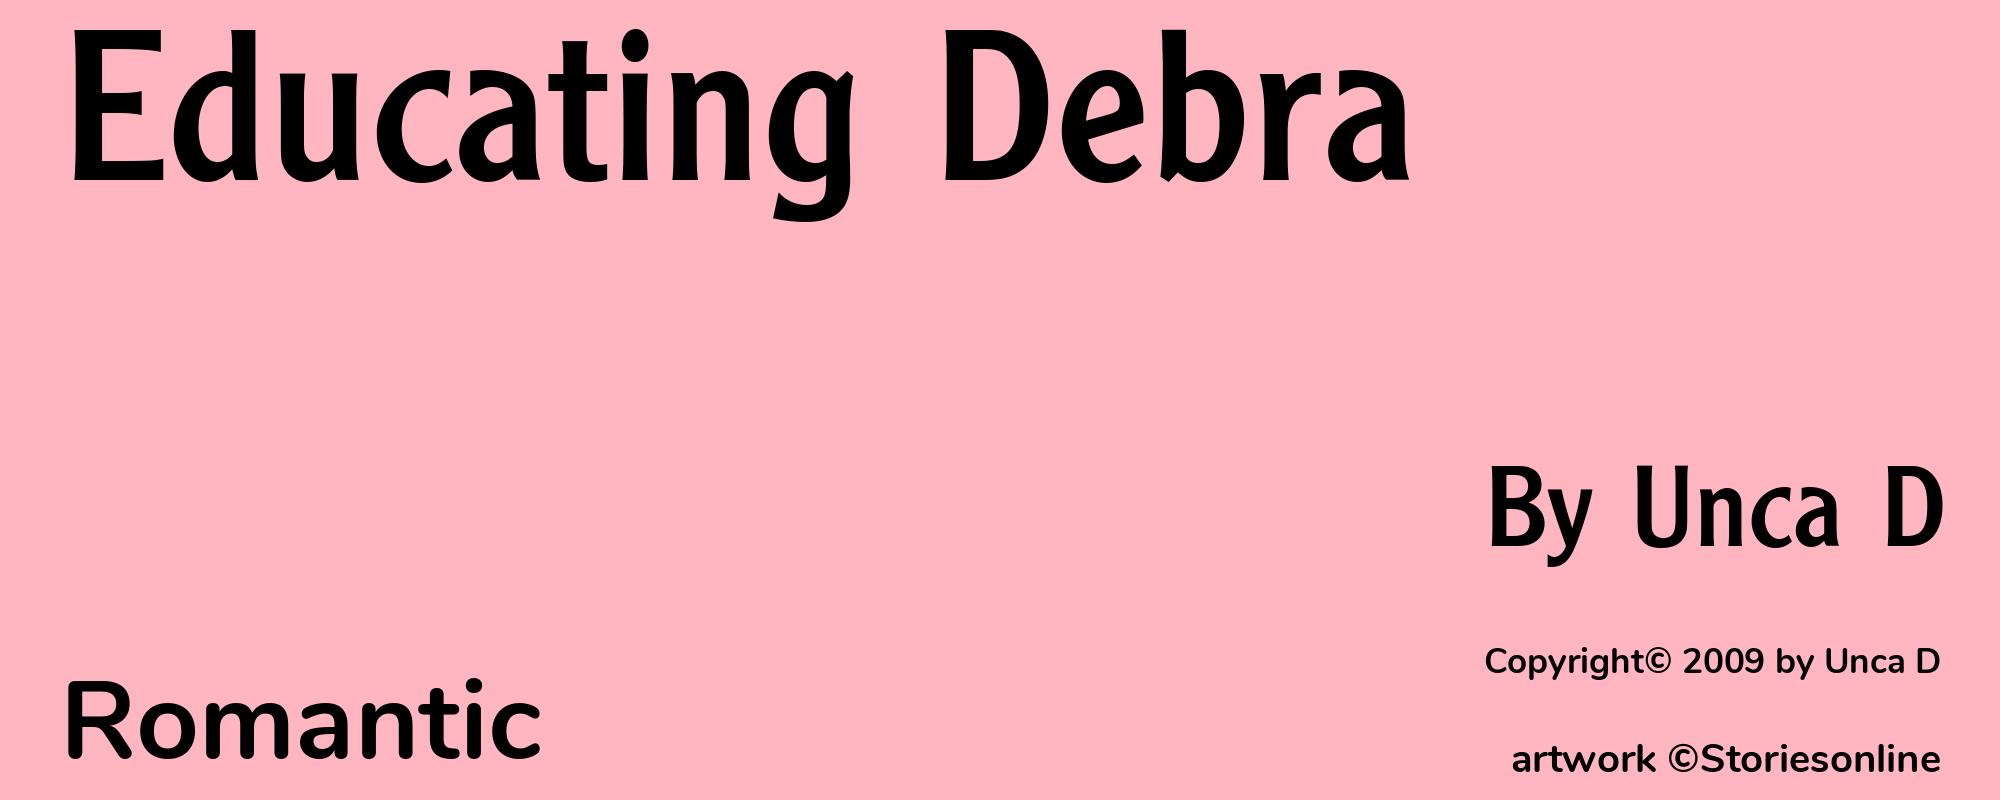 Educating Debra - Cover